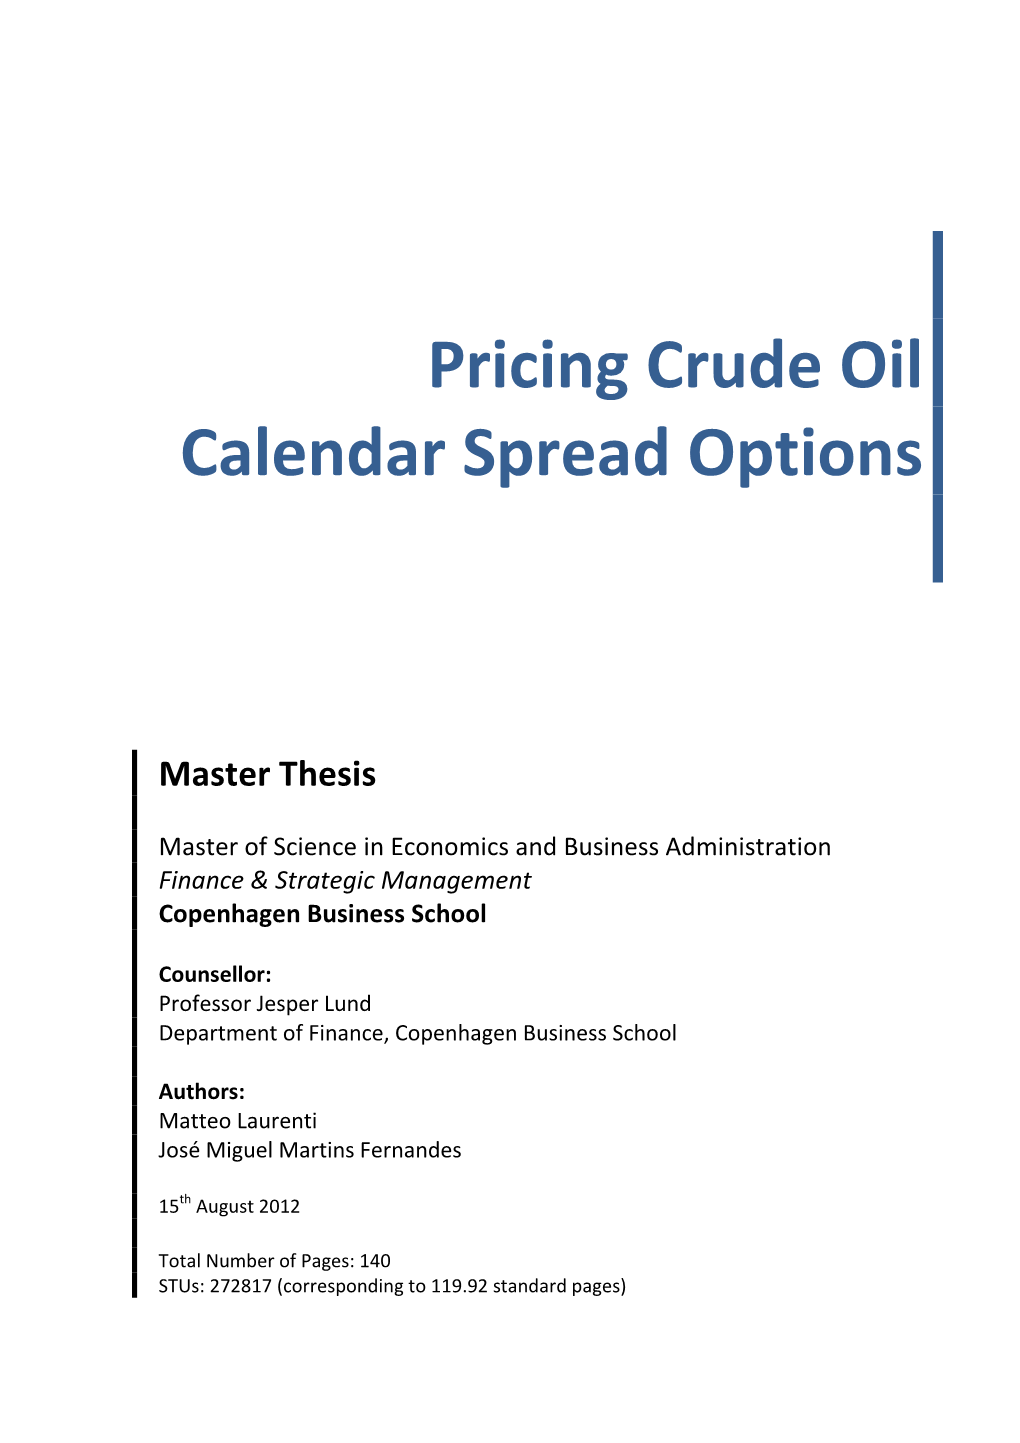 Pricing Crude Oil Calendar Spread Options